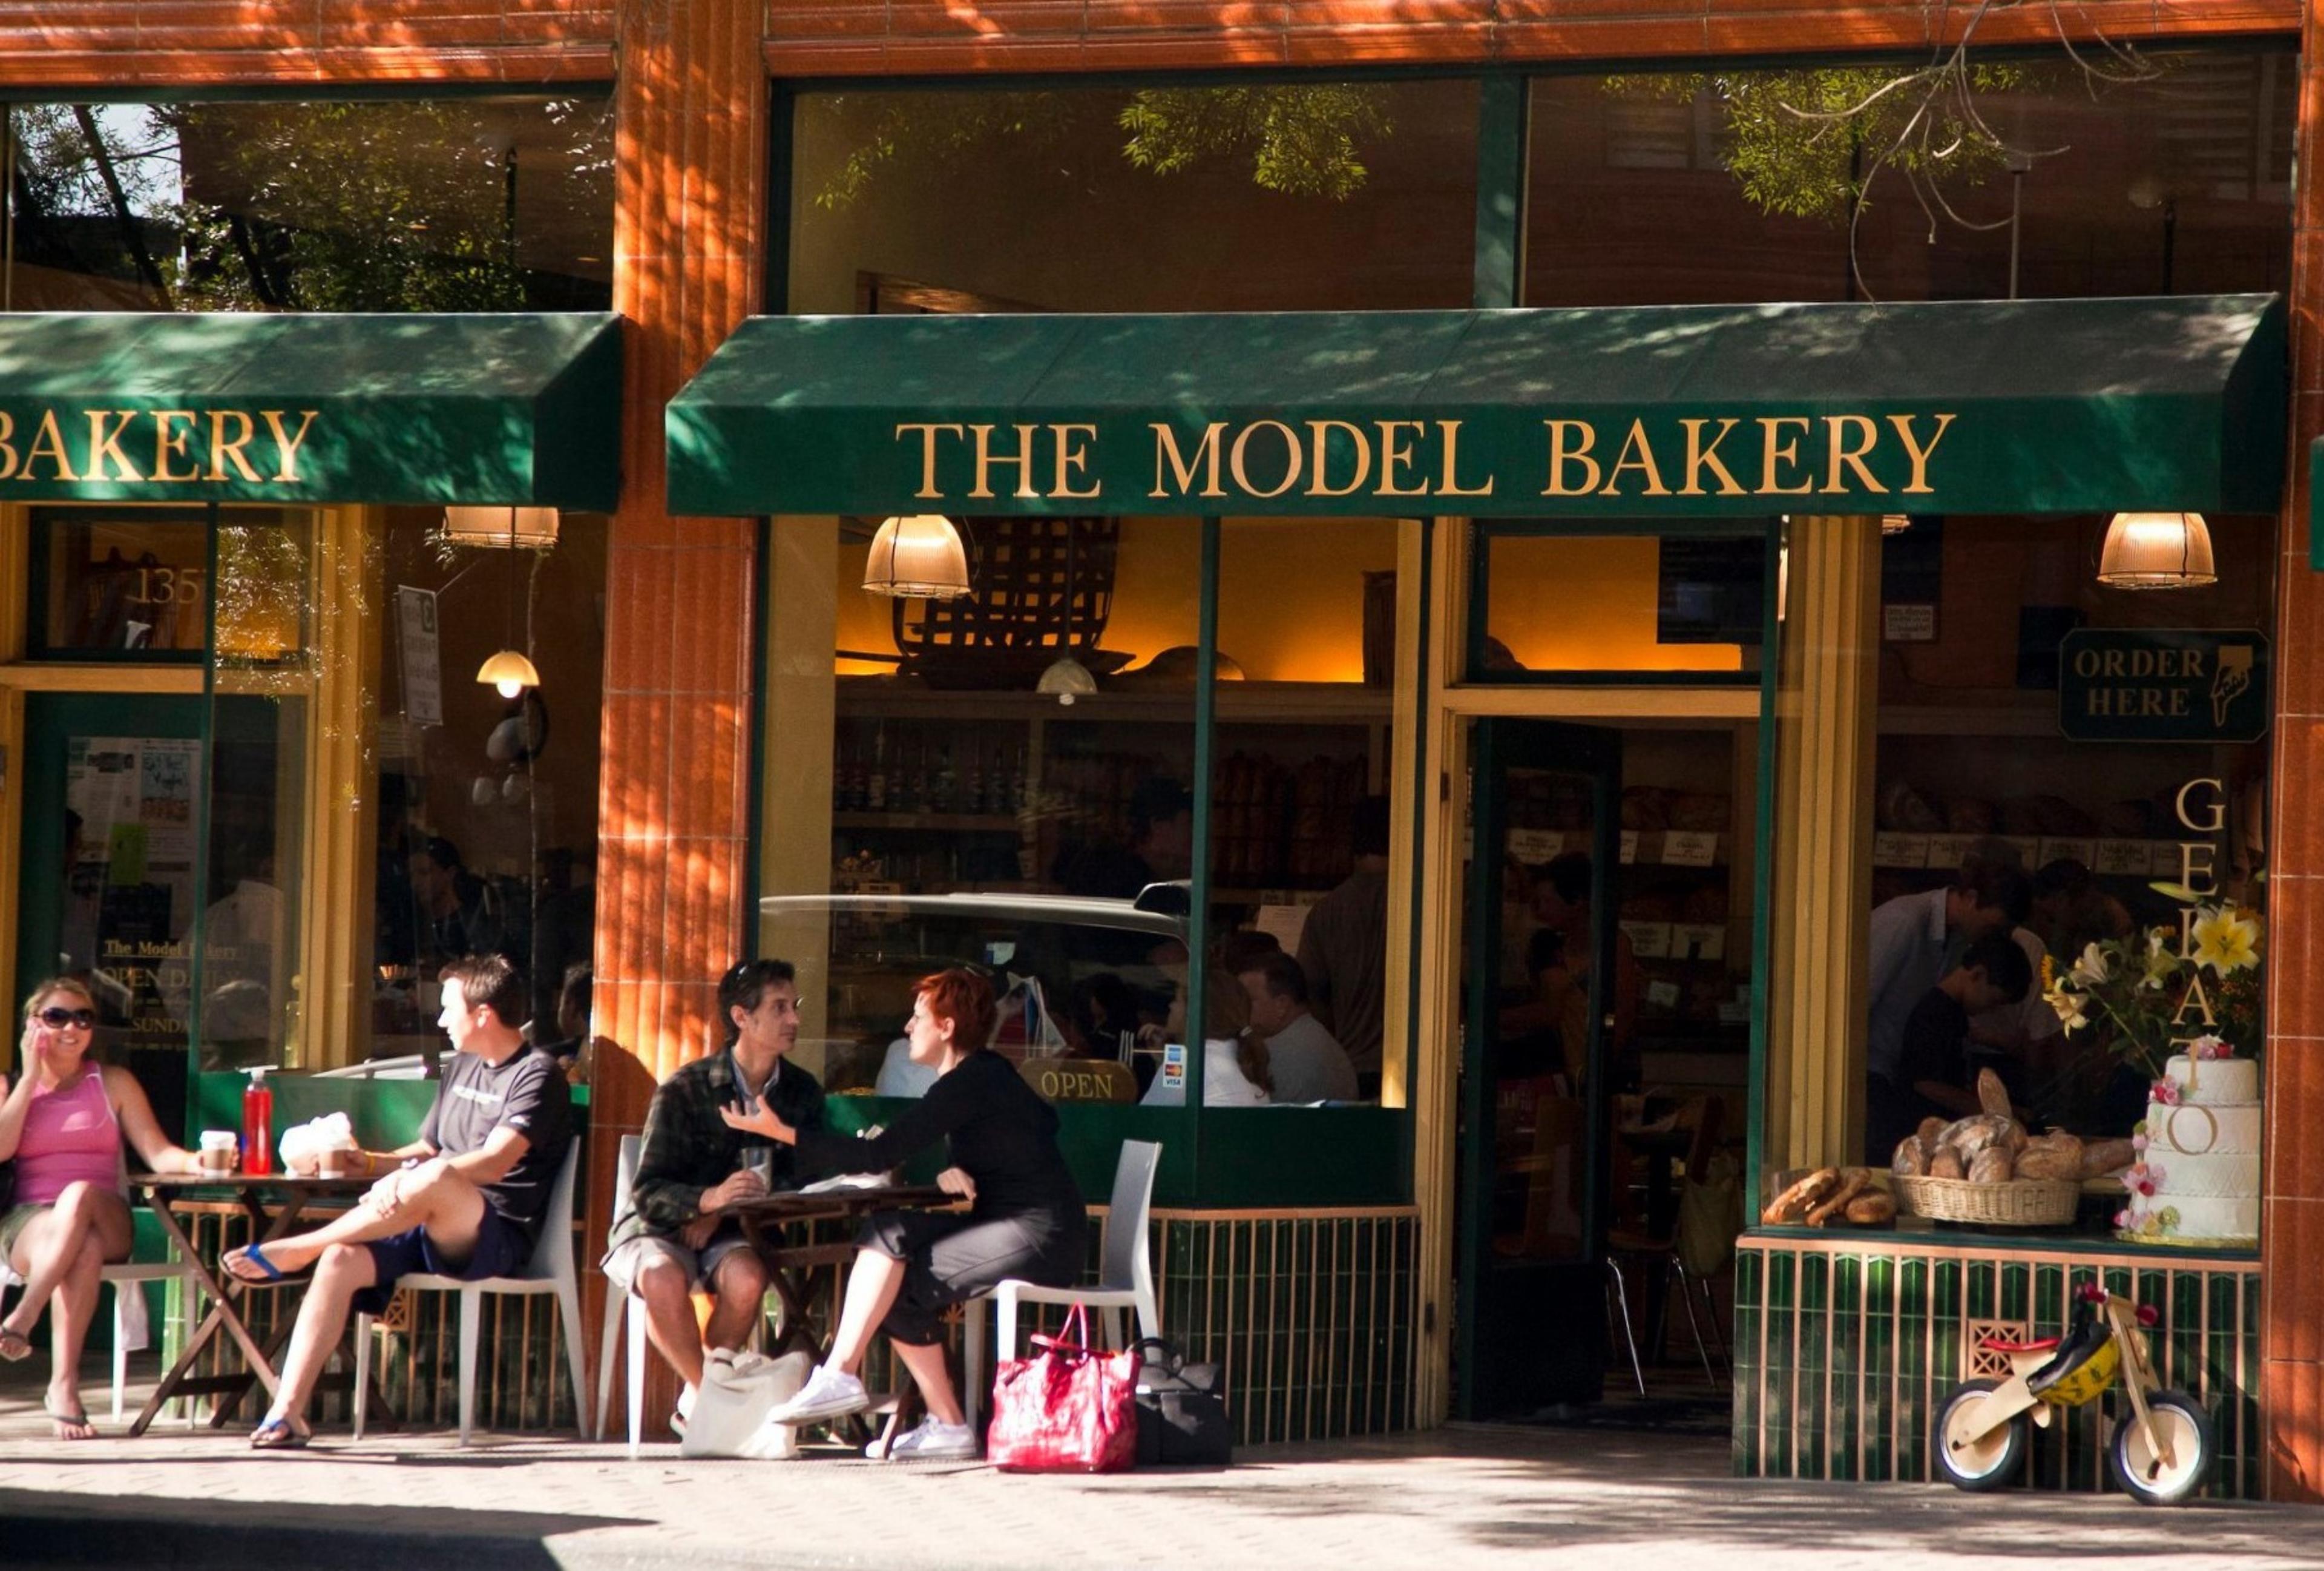 The Model Bakery